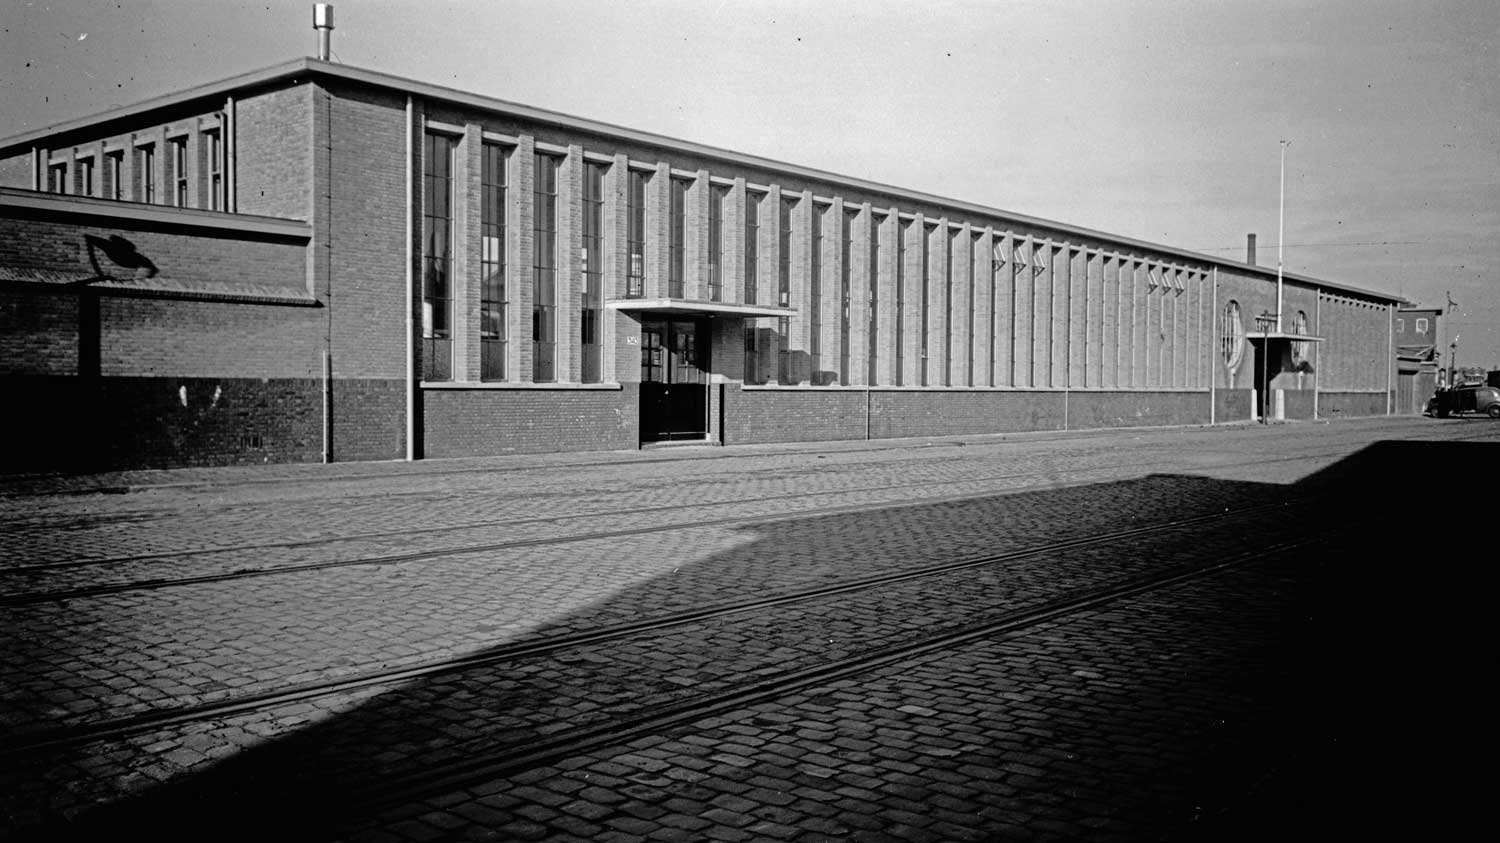 RAC, 1e van der Kunstraat, werkplaats, 1939